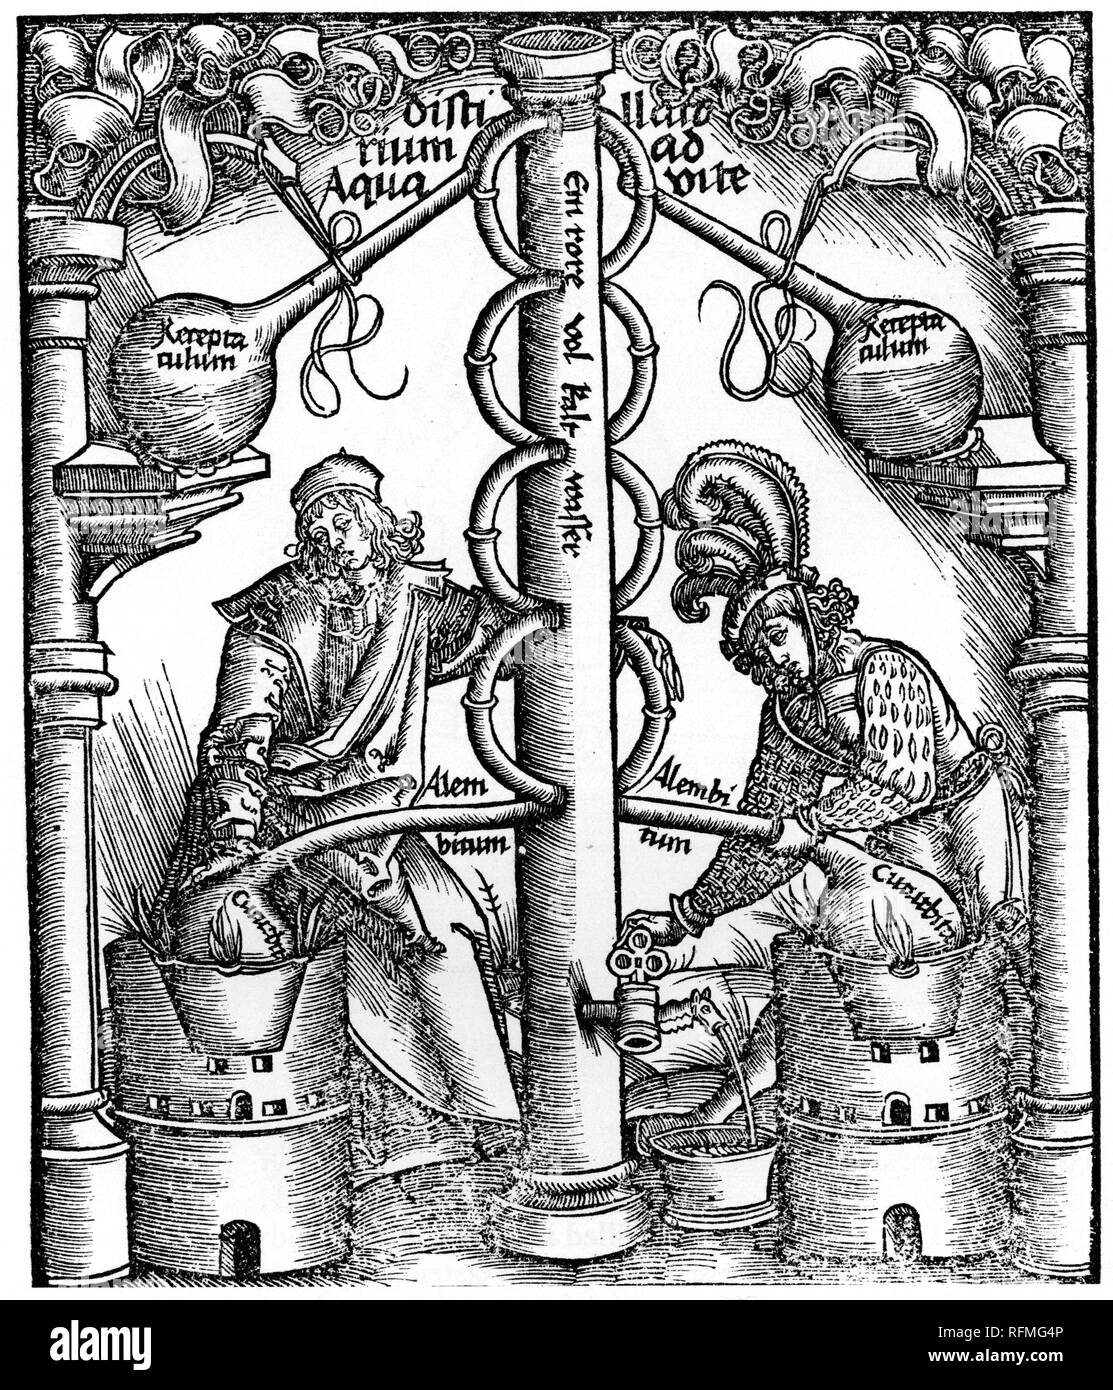 A ancora con una colonna di frazionamento, 1512. A ancora con una colonna di frazionamento, 1512. Di Hieronymus Brunschwig (c1450-c1512). Da Liber de arte distillandi de compositis, 1512, di Hieronymus Brunschwig (c1450-c1512). Foto Stock